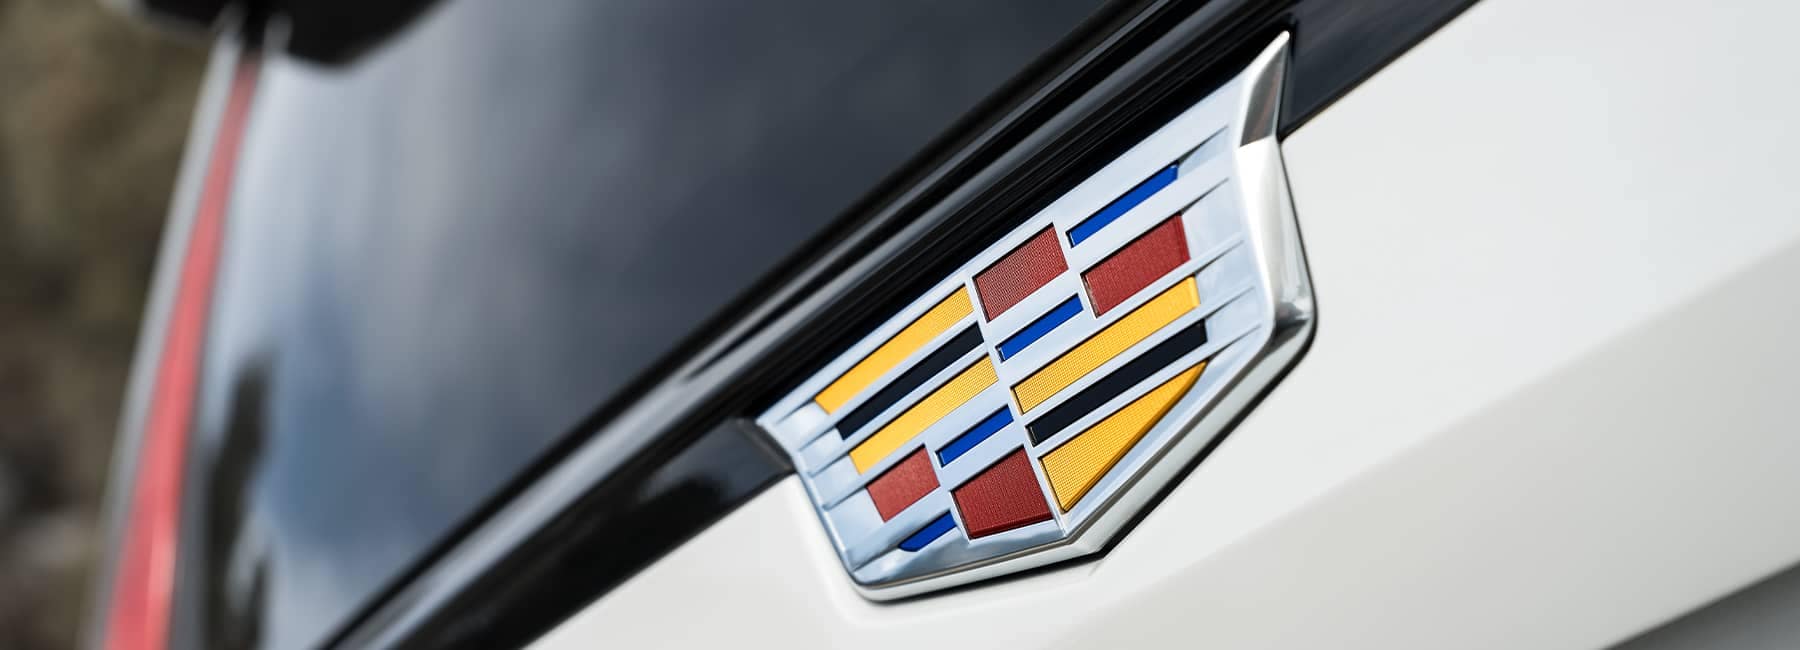 2021 Cadillac Escalade Rear Emblem